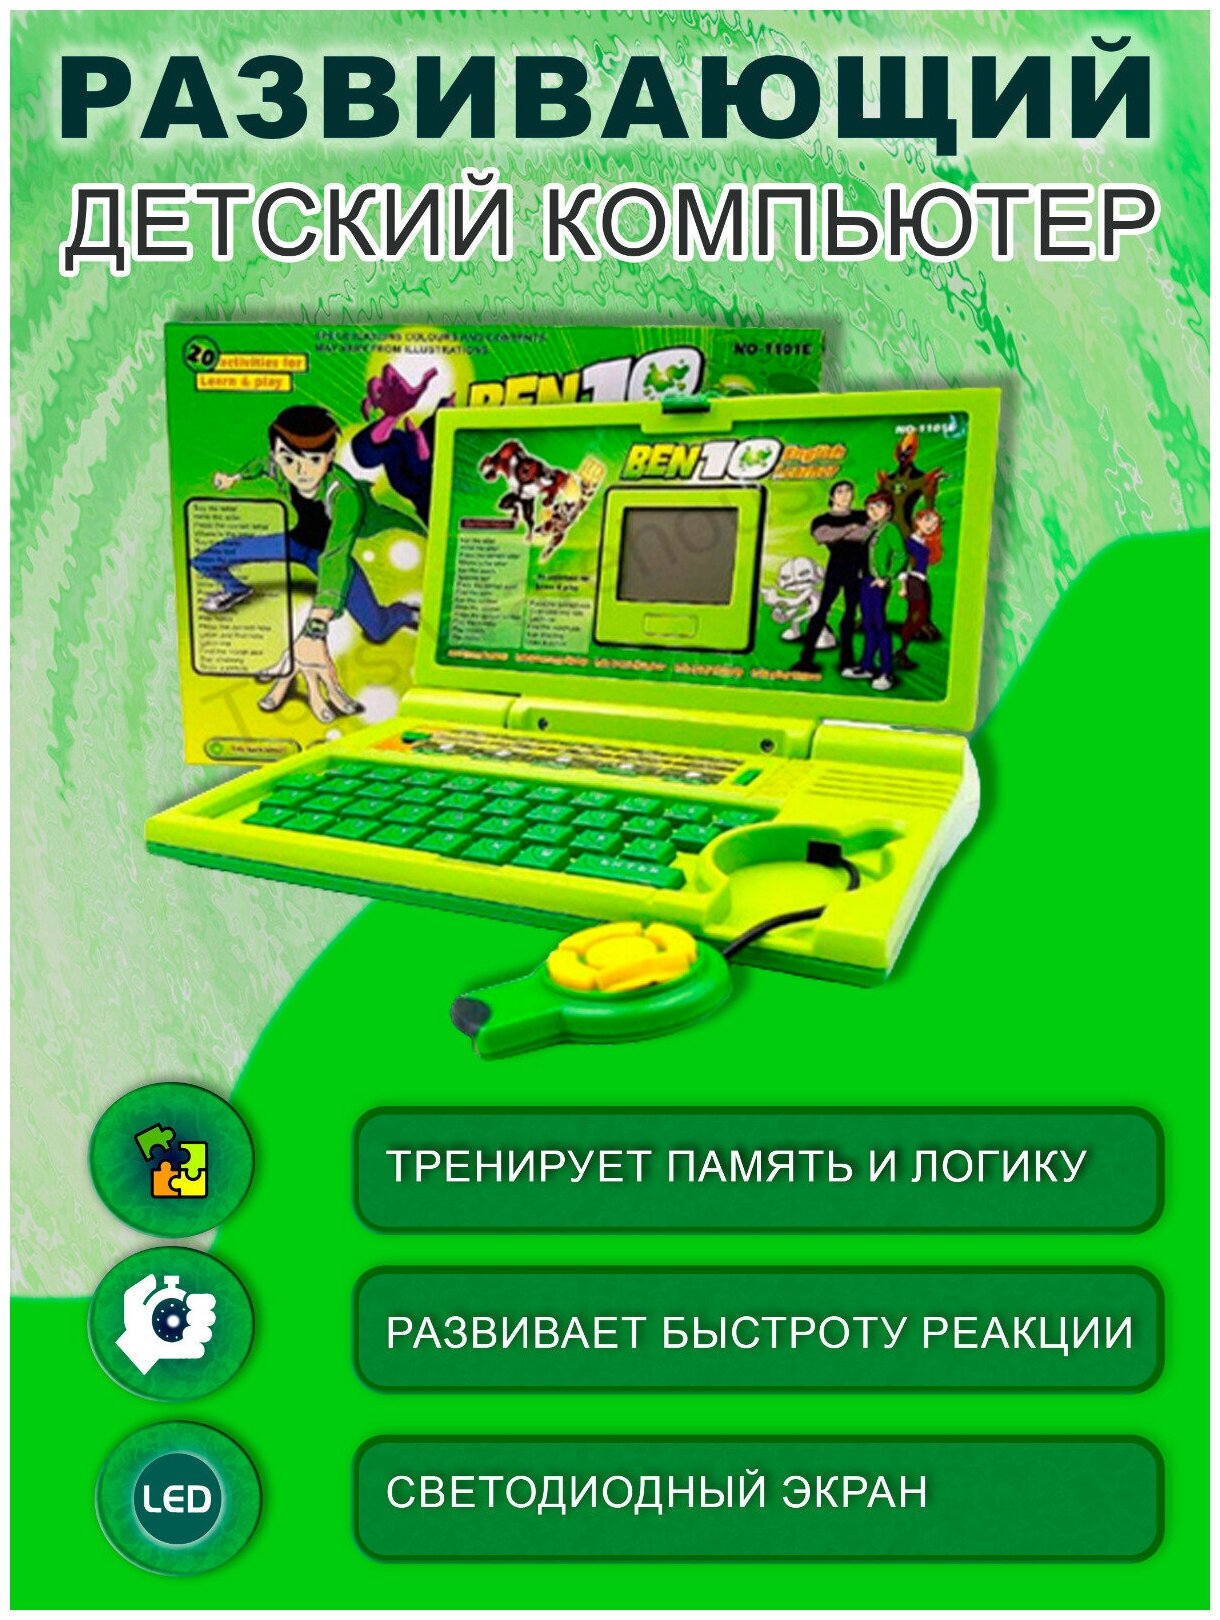 Развивающий компьютер детский игровой интеллектуальный